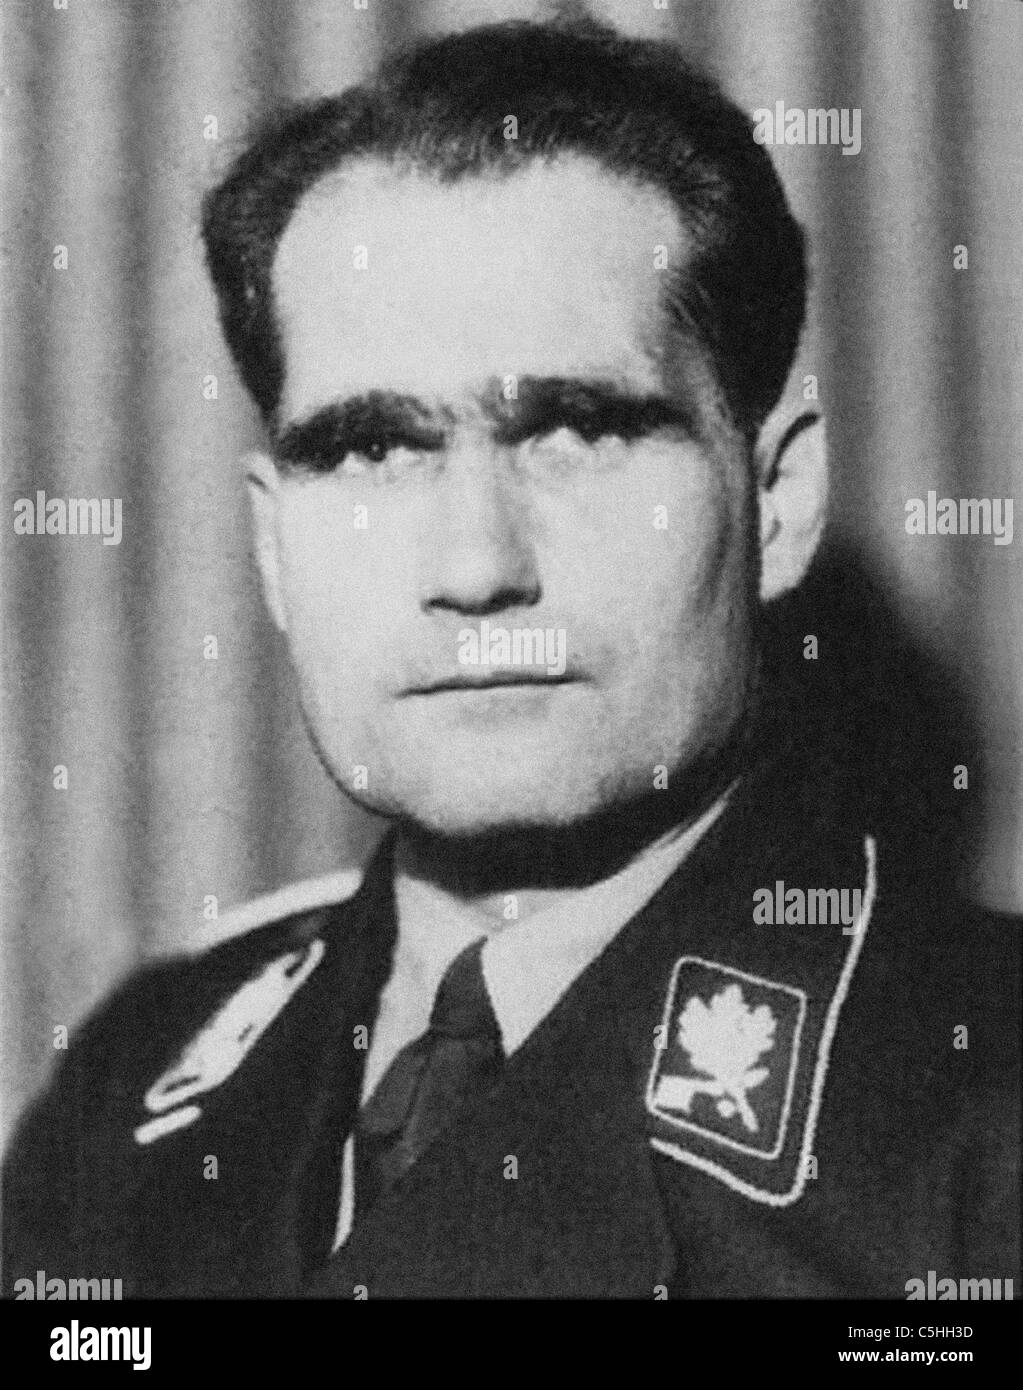 Rudolf Hess - Hitlers Krieg Zeit Stellvertreter war ein prominenter NS-Politiker. Aus dem Archiv des Pressedienstes Portrait Stockfoto